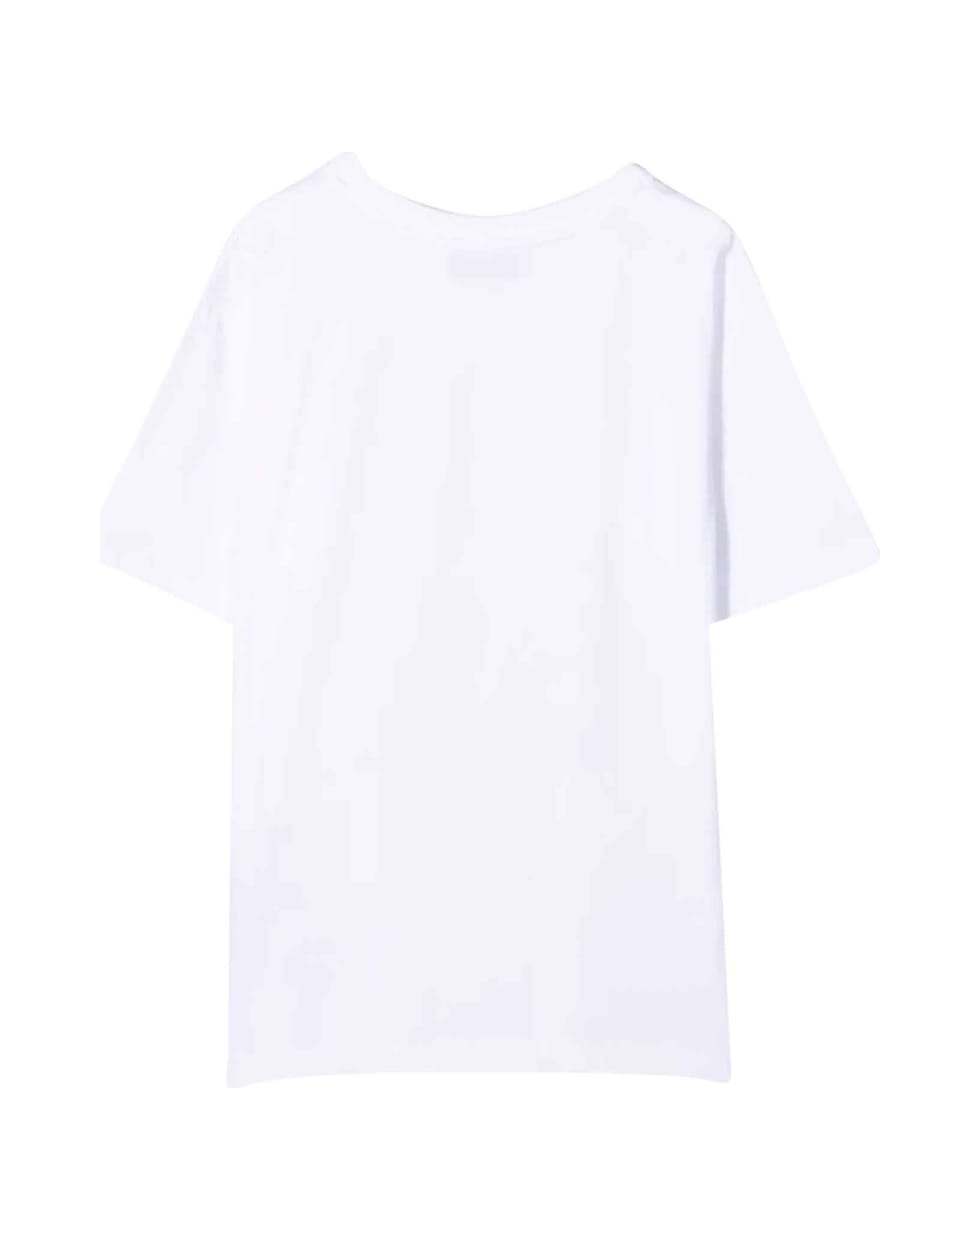 Moschino Unisex White T-shirt - Bianco